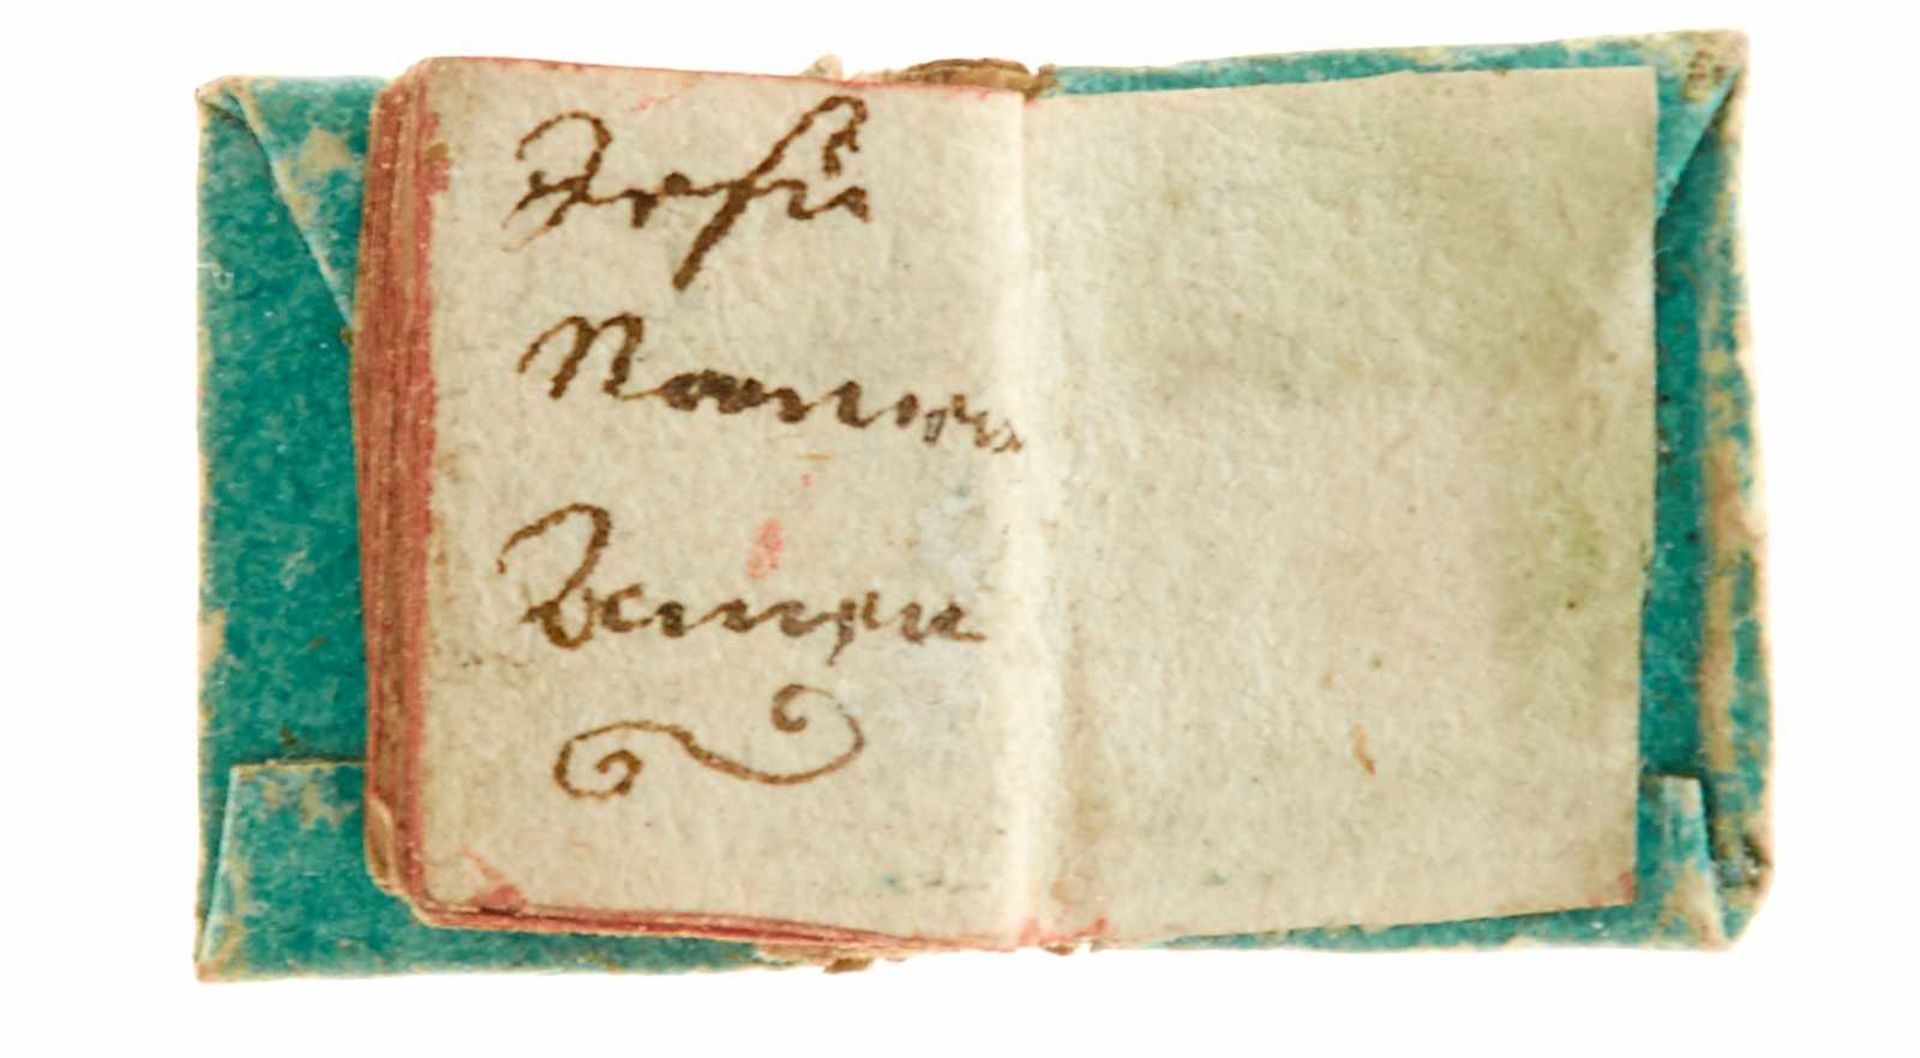 Miniaturbuch - Winziges Gebetbuch.Deutsche Handschrift auf Papier. Deutschland, dat. 1719. Ca. 2 x - Bild 3 aus 3